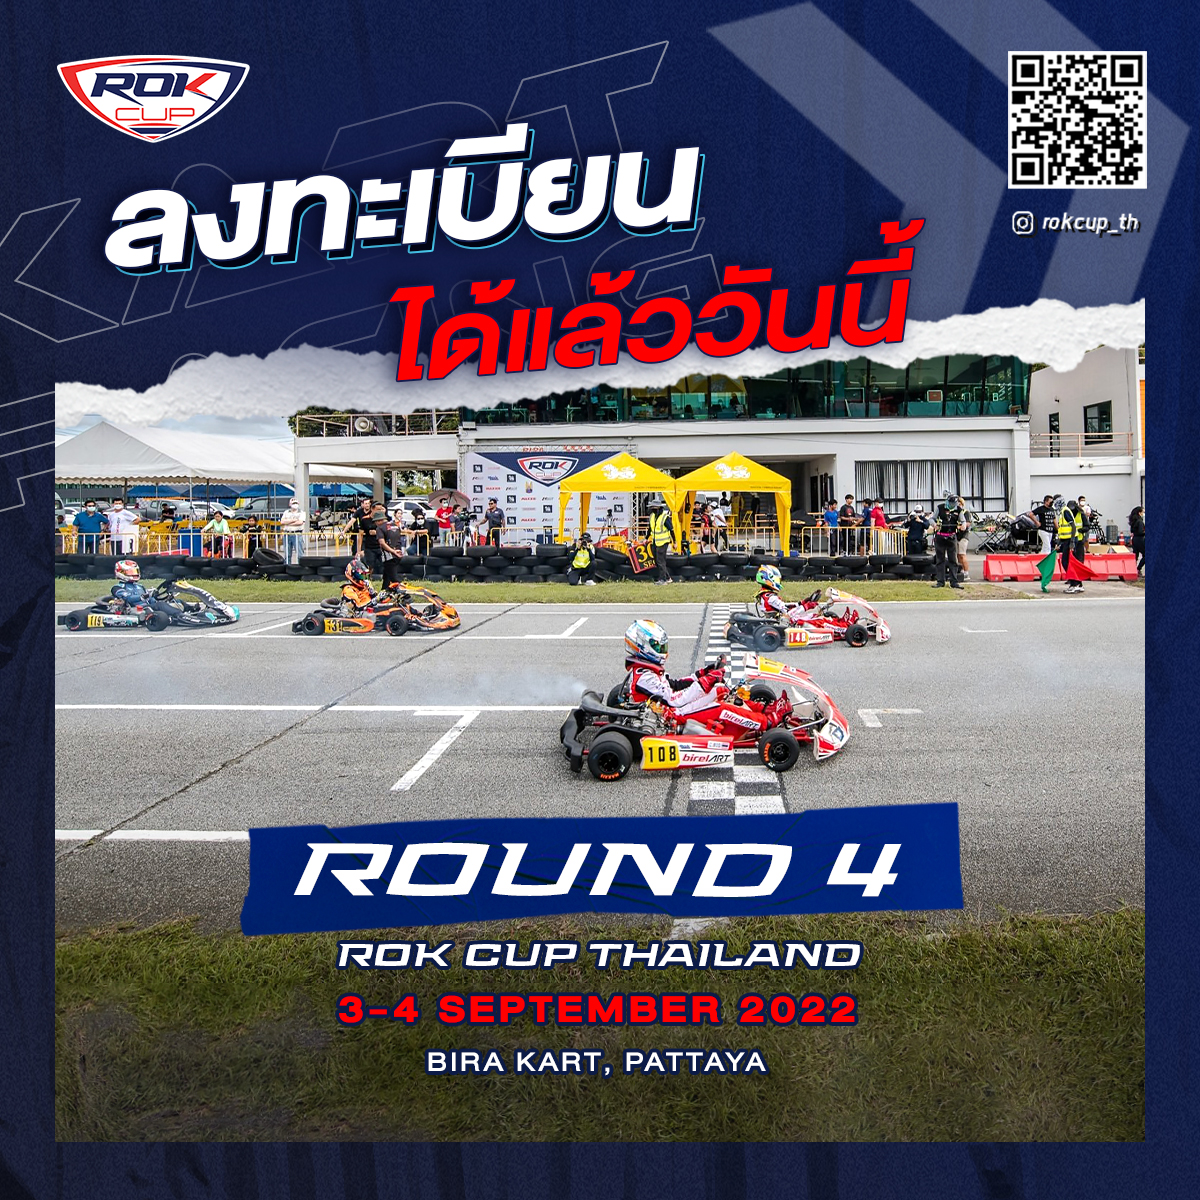 📢 ขอเชิญลงทะเบียนเข้าร่วมการแข่งขันรายการ ROK CUP THAILAND 2022 สนามที่ 4  ระหว่างวันที่ 3-4 กันยายน 2565 ณ สนามพีระ คาร์ท จังหวัดชลบุรี